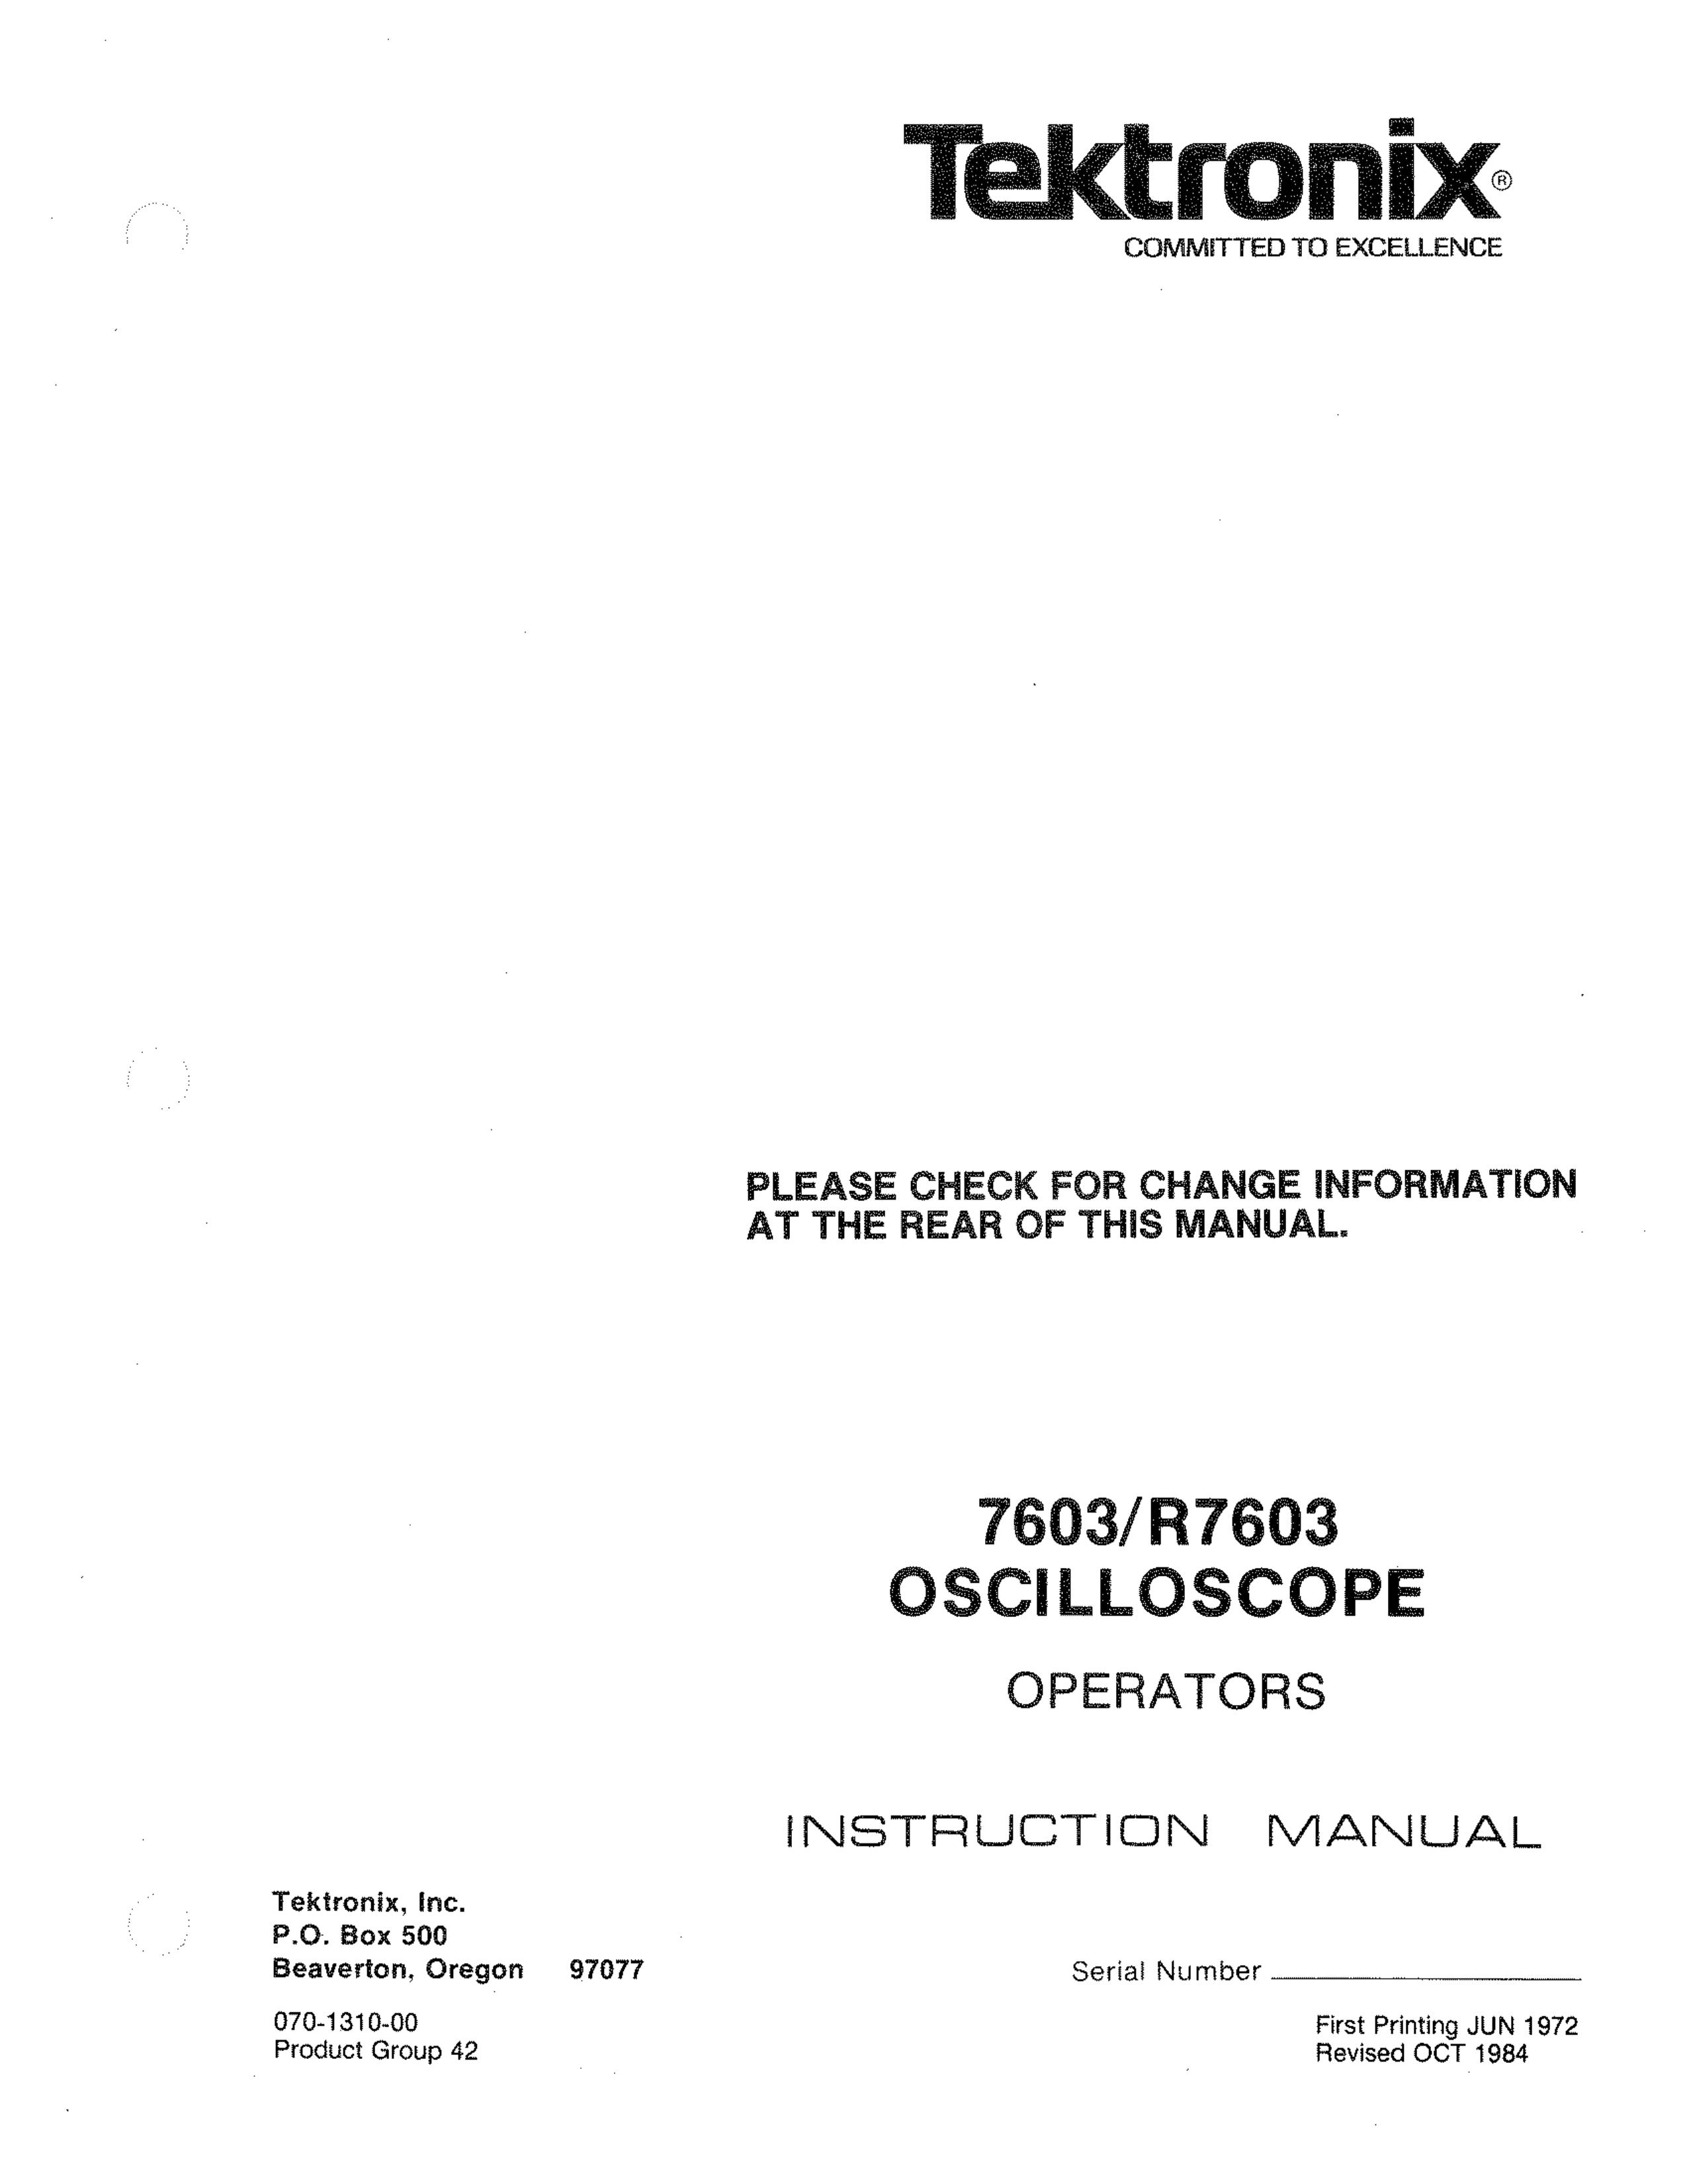 Tektronix 7603 Sprinkler User Manual